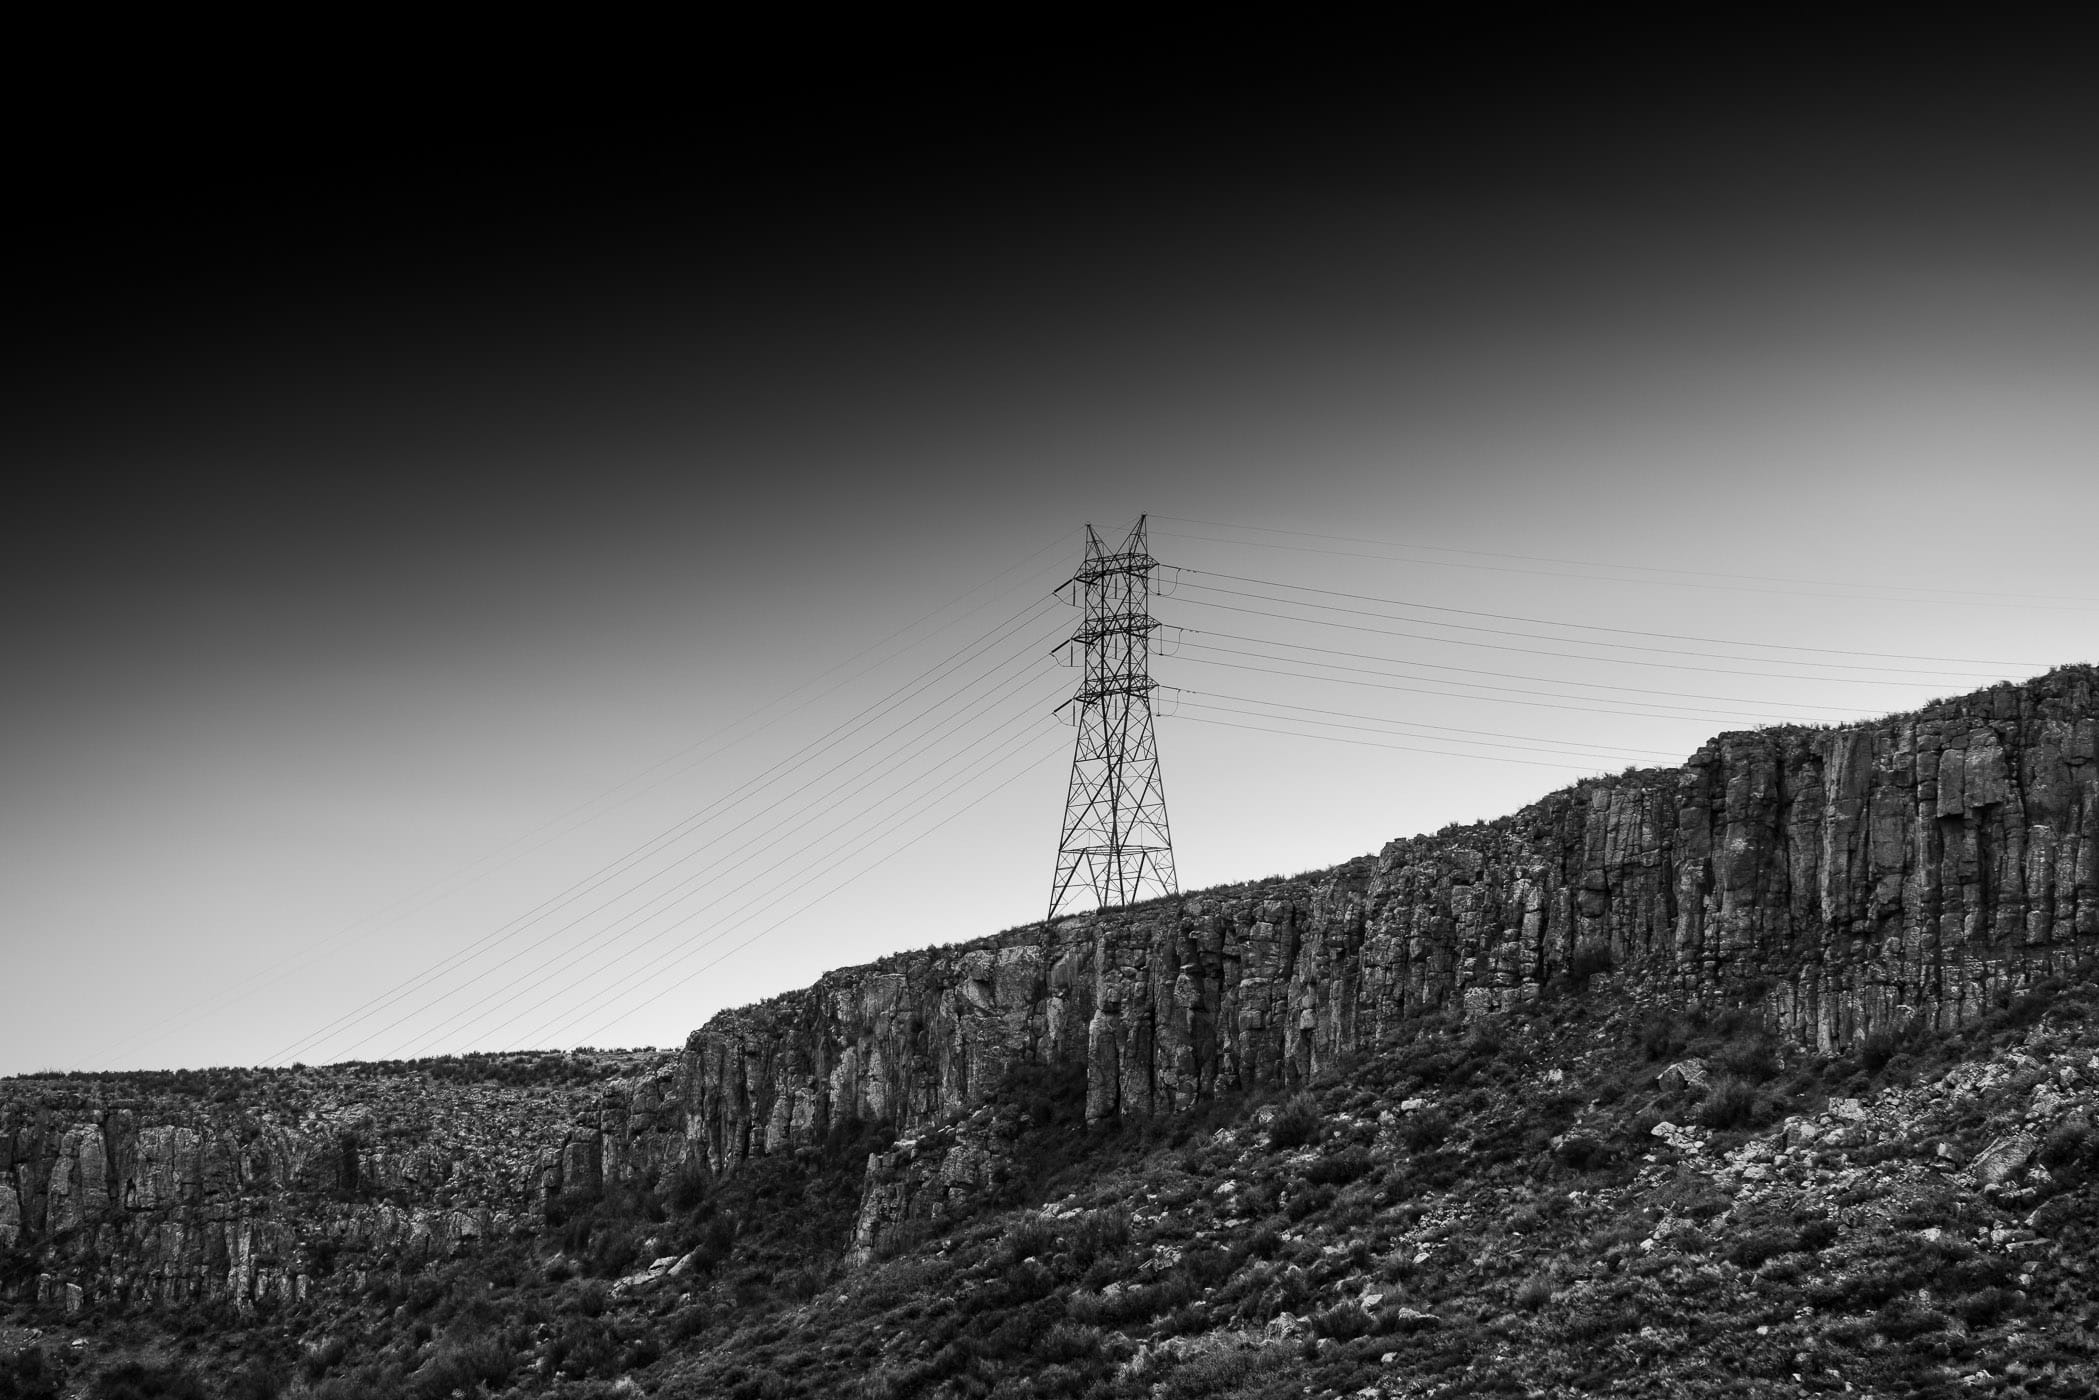 An electric pylon along the cliffs of North Table Mountain, Golden, Colorado.